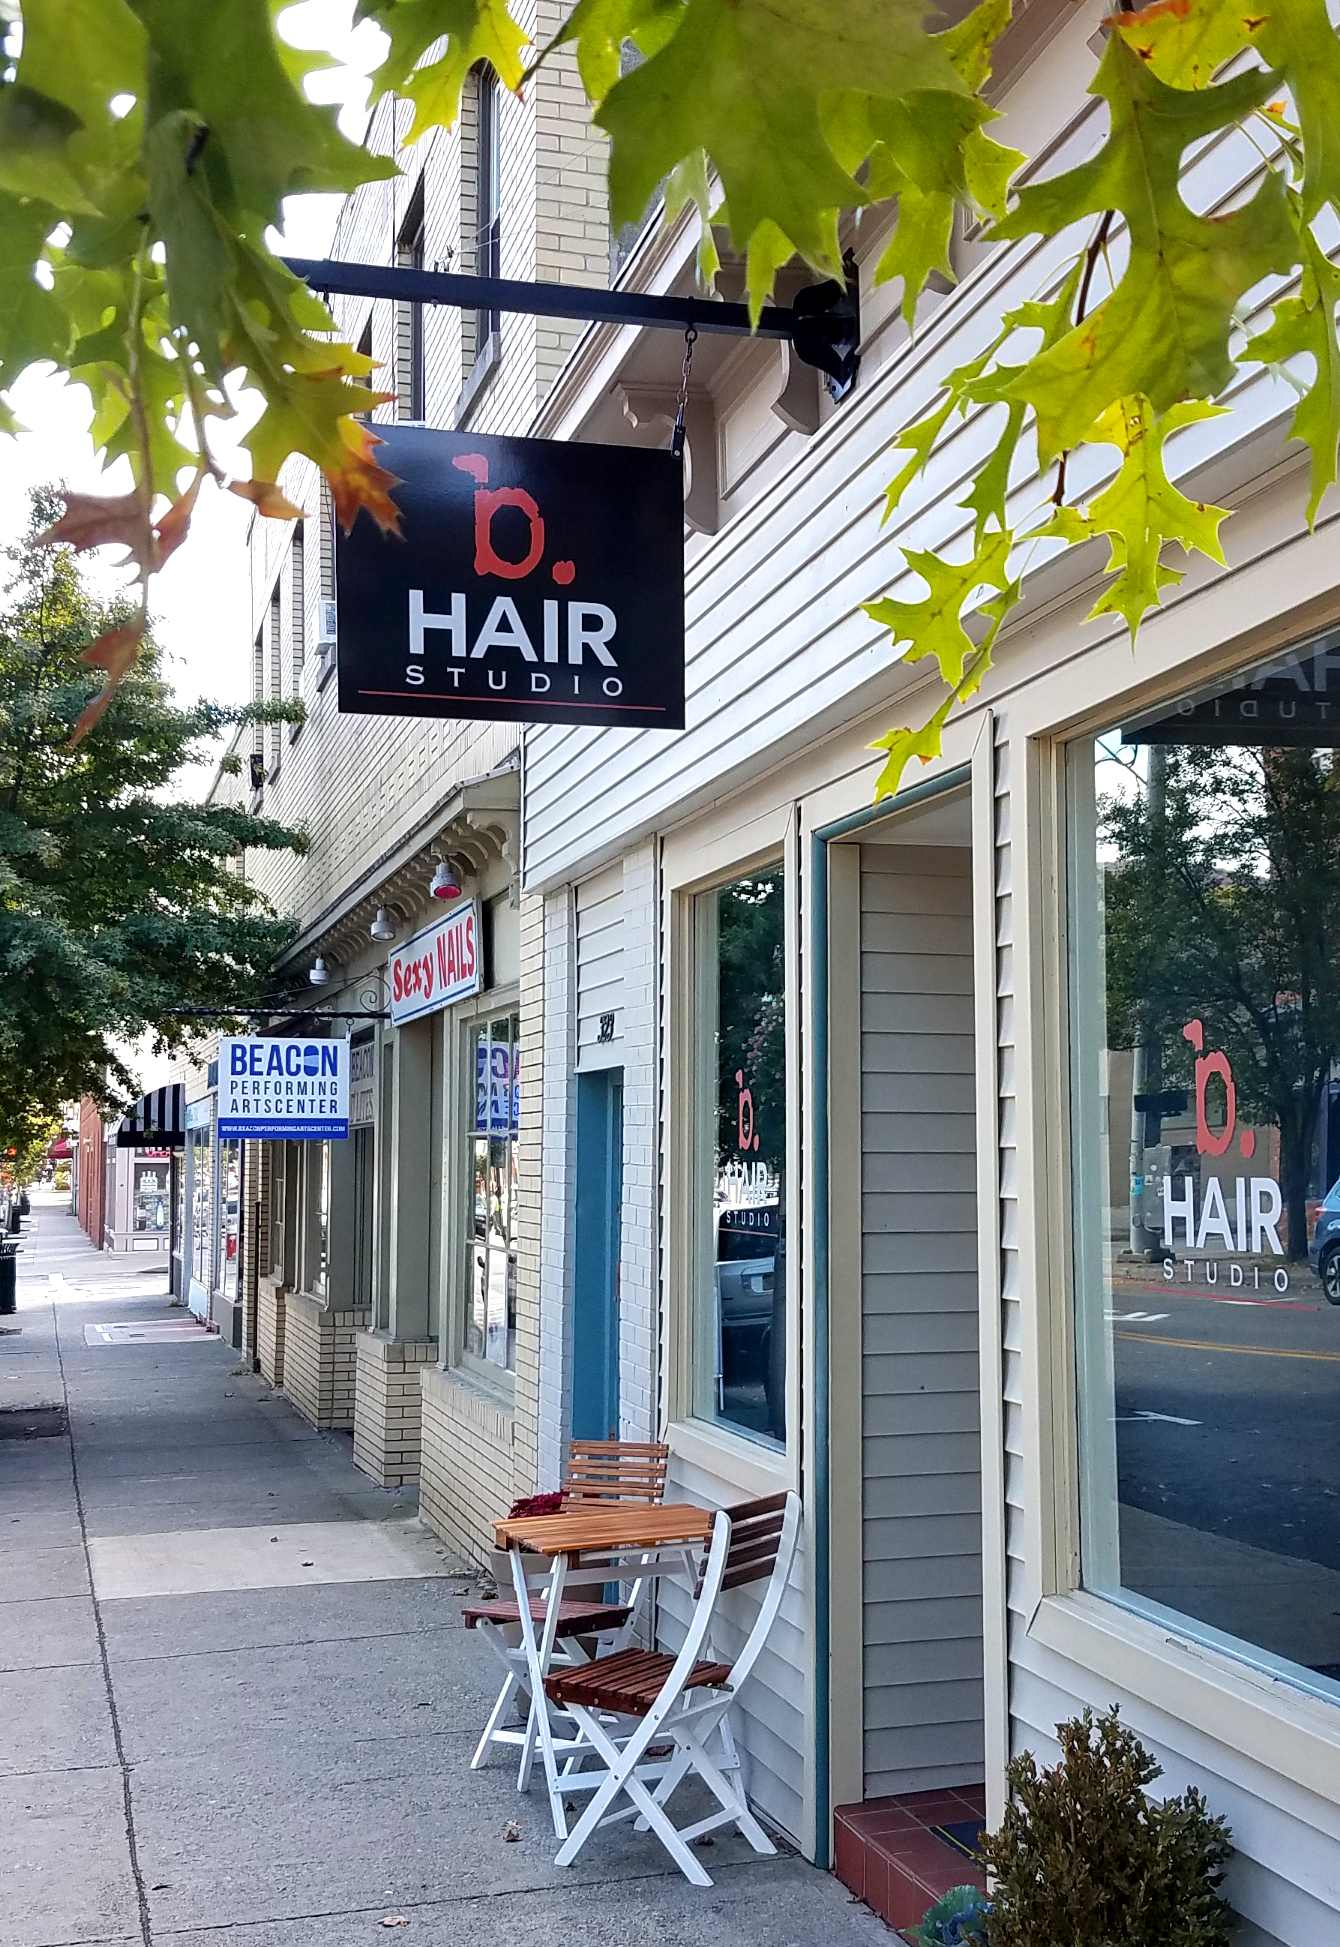 B Hair Studio 323 Main St, Beacon New York 12508